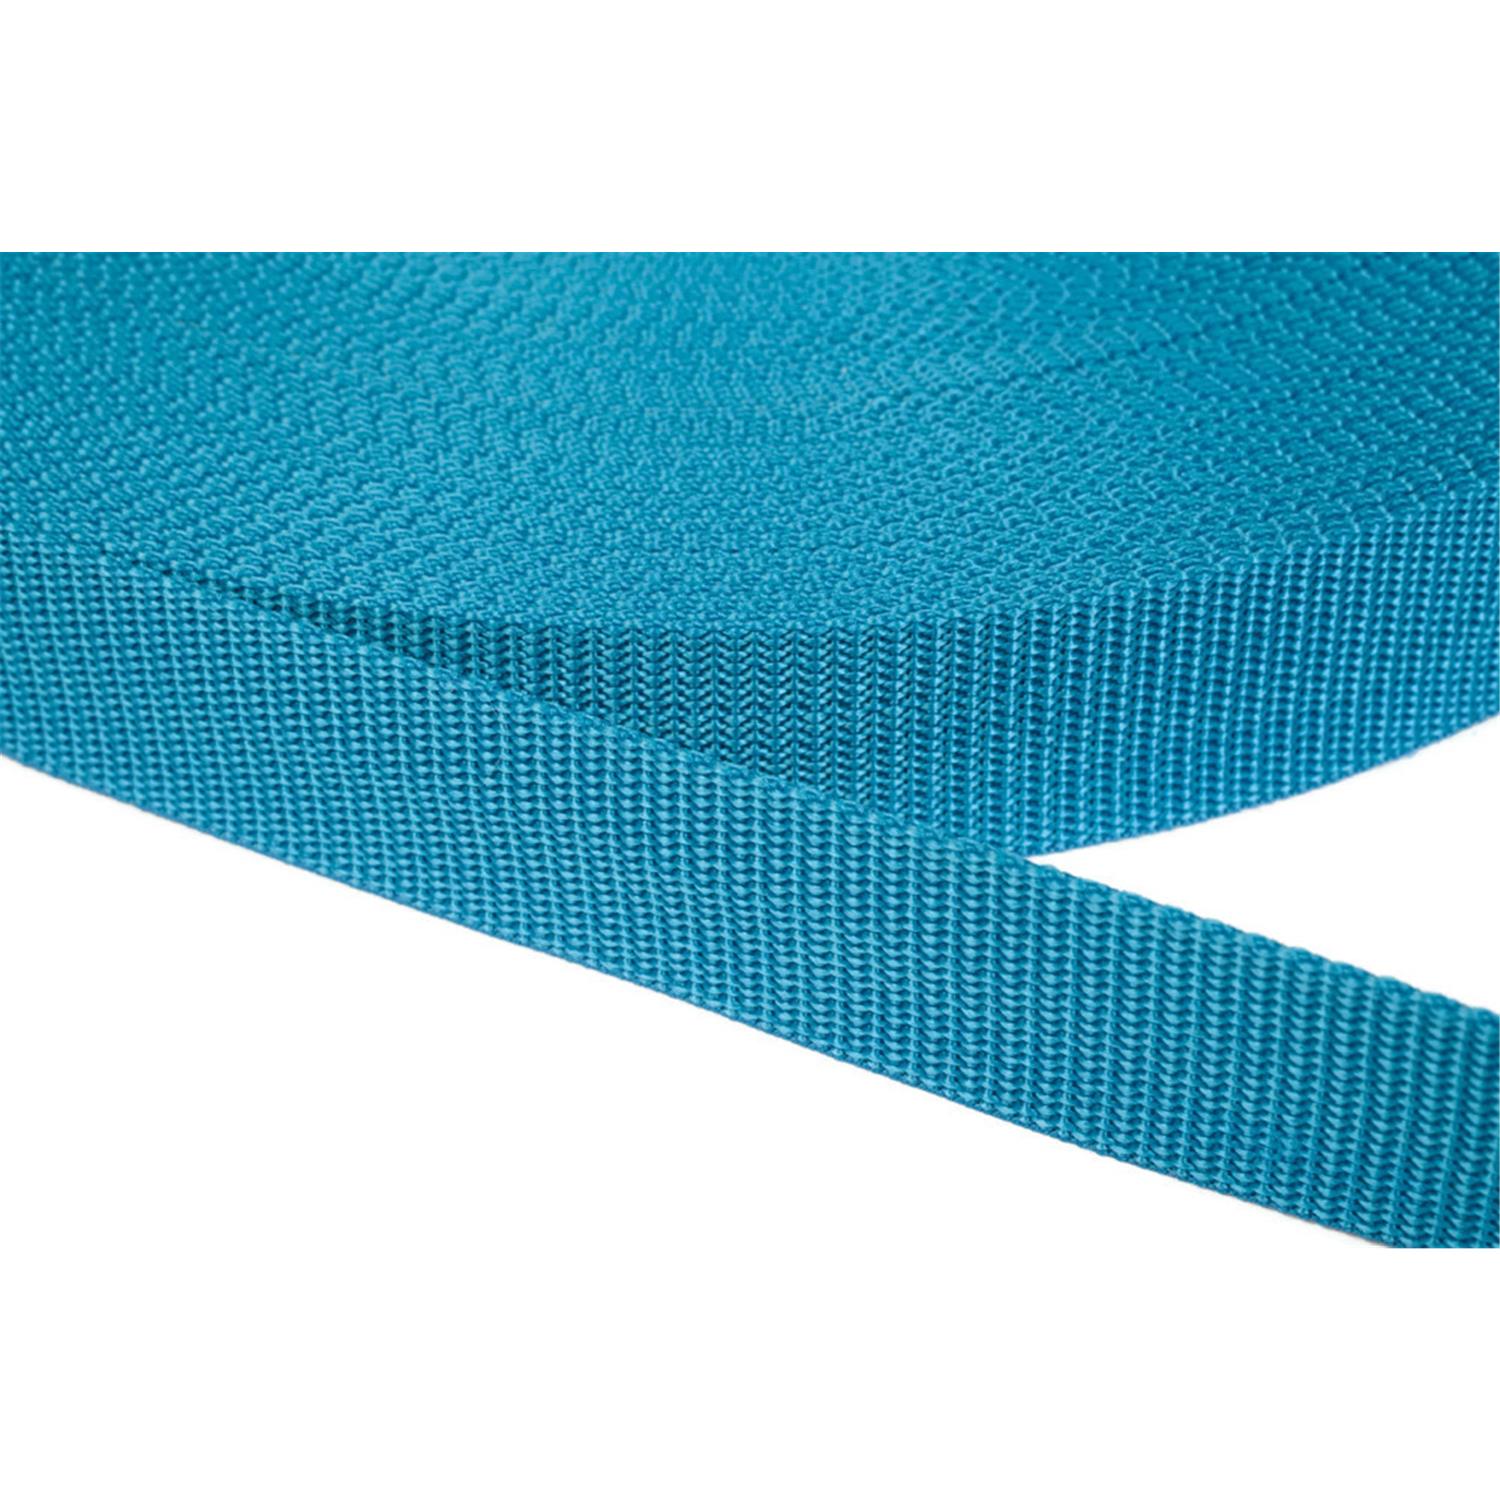 Gurtband 40mm breit aus Polypropylen in 41 Farben 29 - türkis 12 Meter